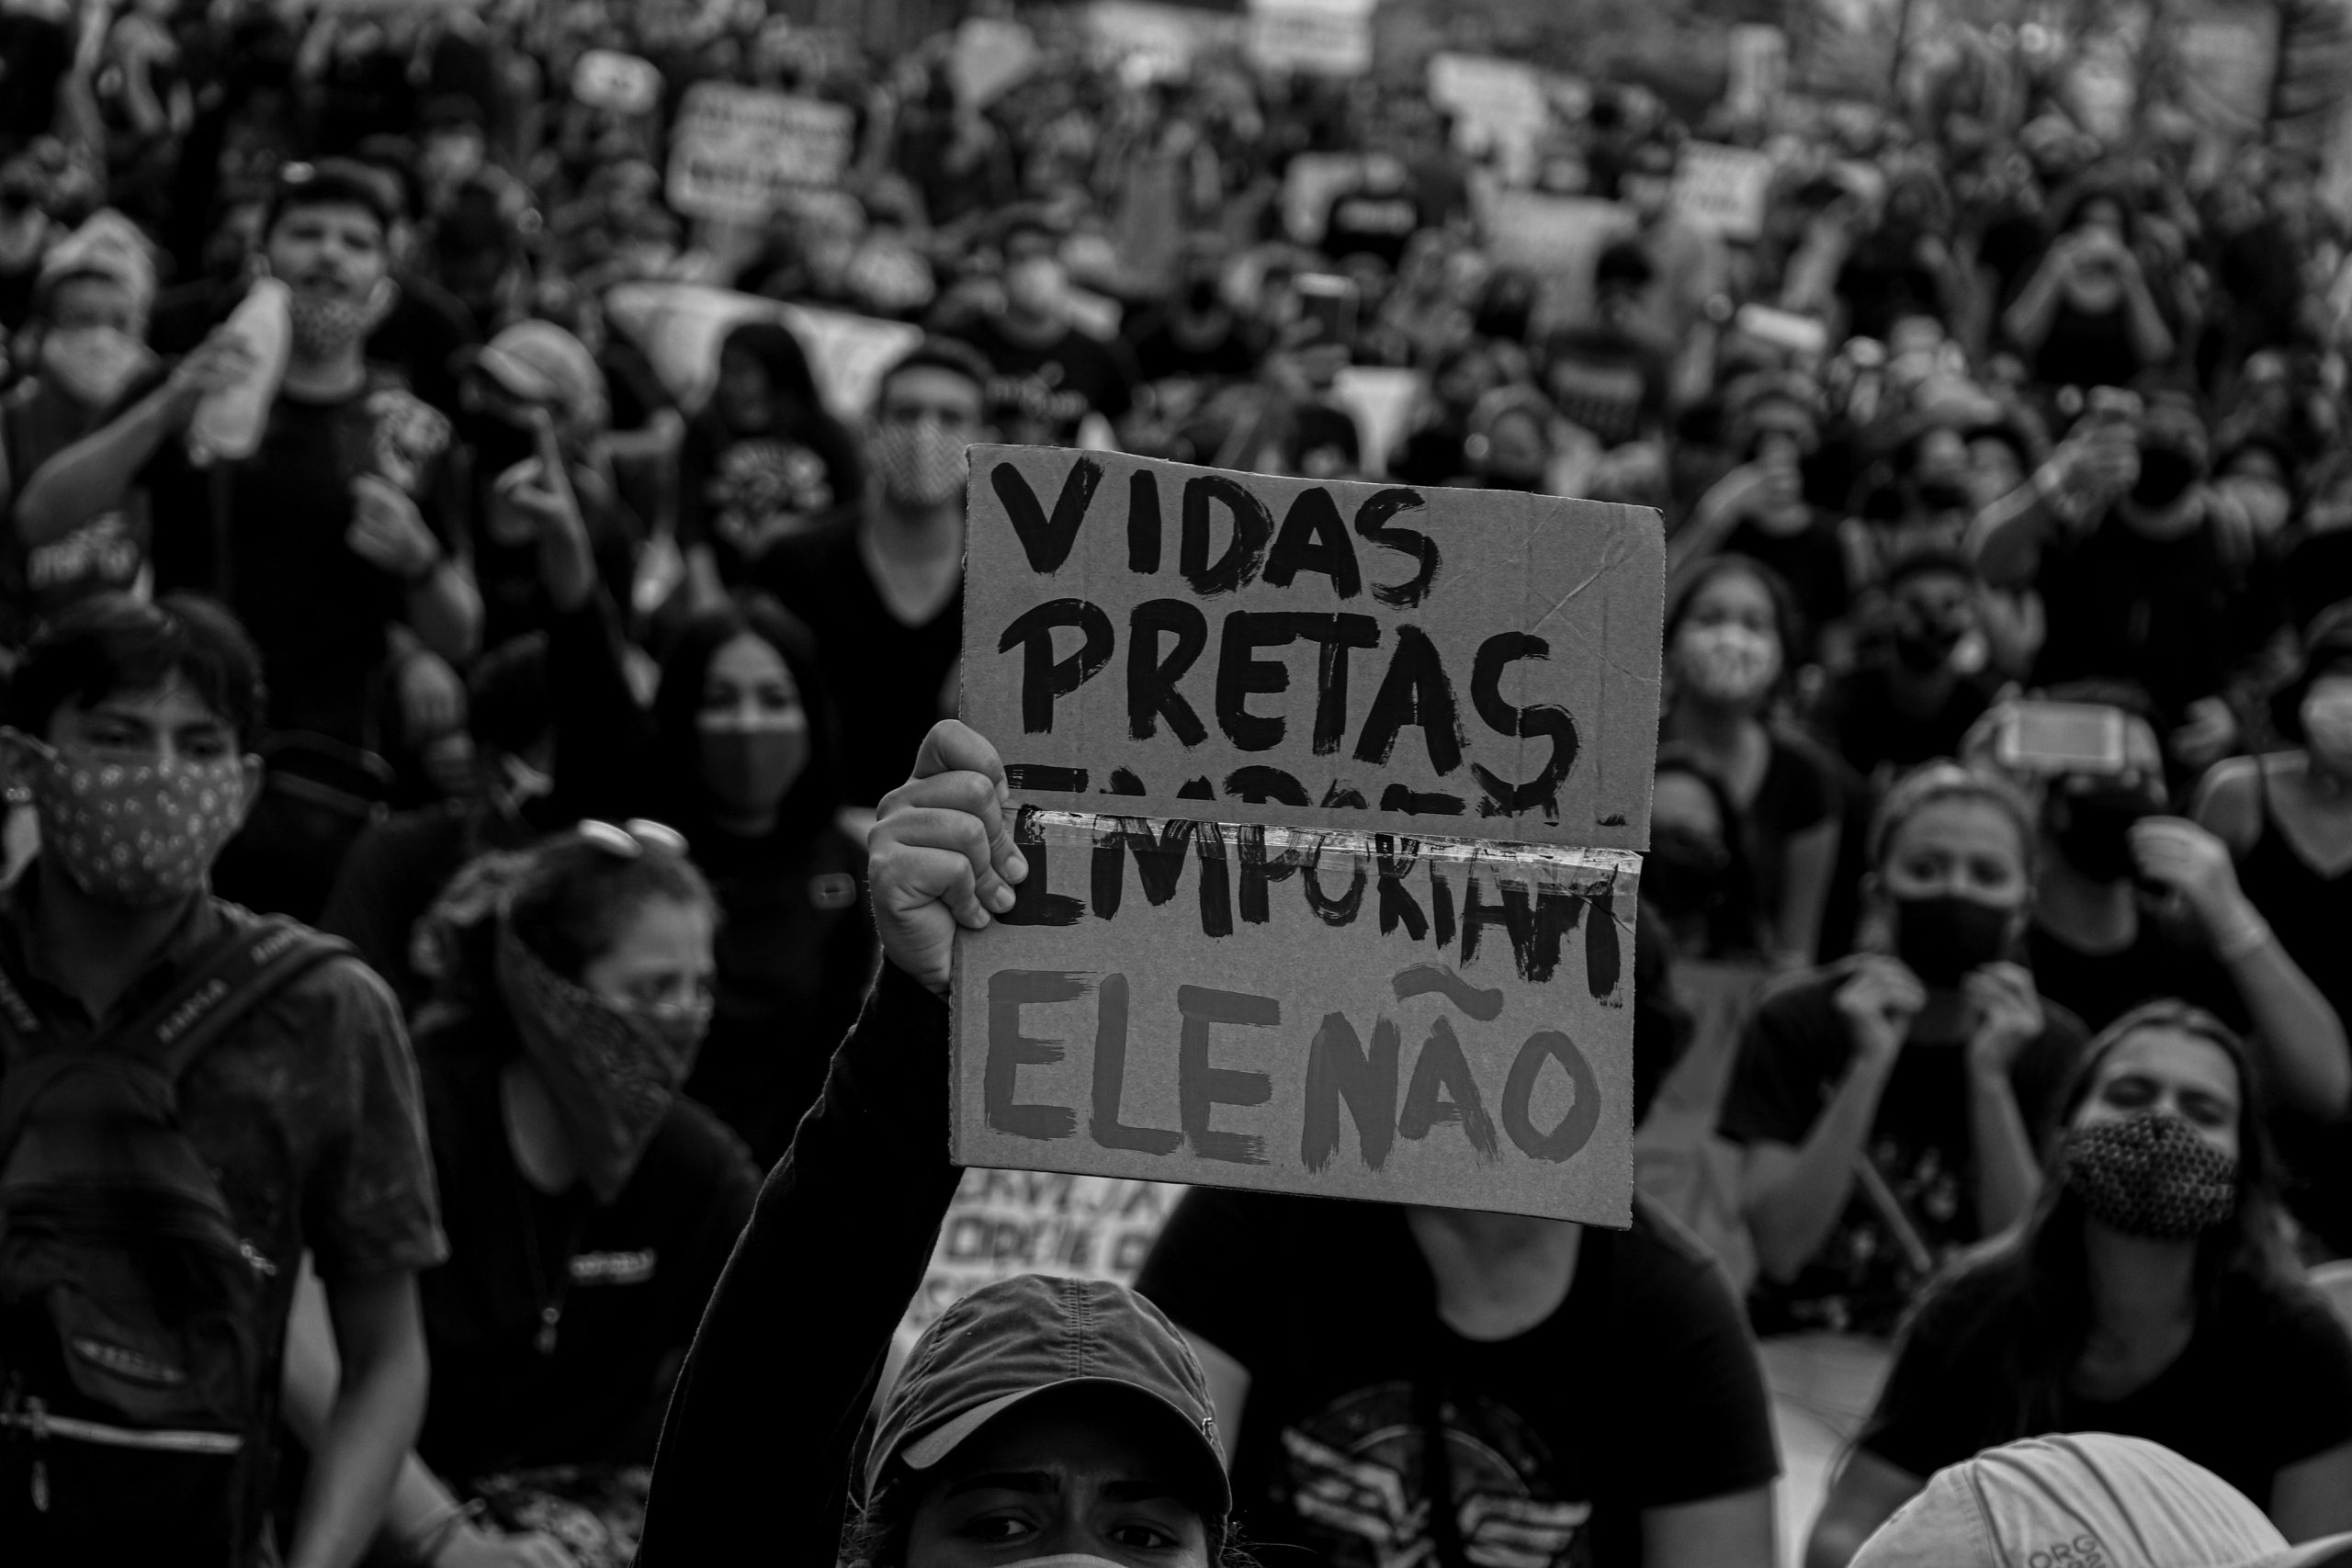 Um "protesto anti-facista" em Manaus, Amazonas (foto cortesia de Leonardo Leão, @leaoleo)